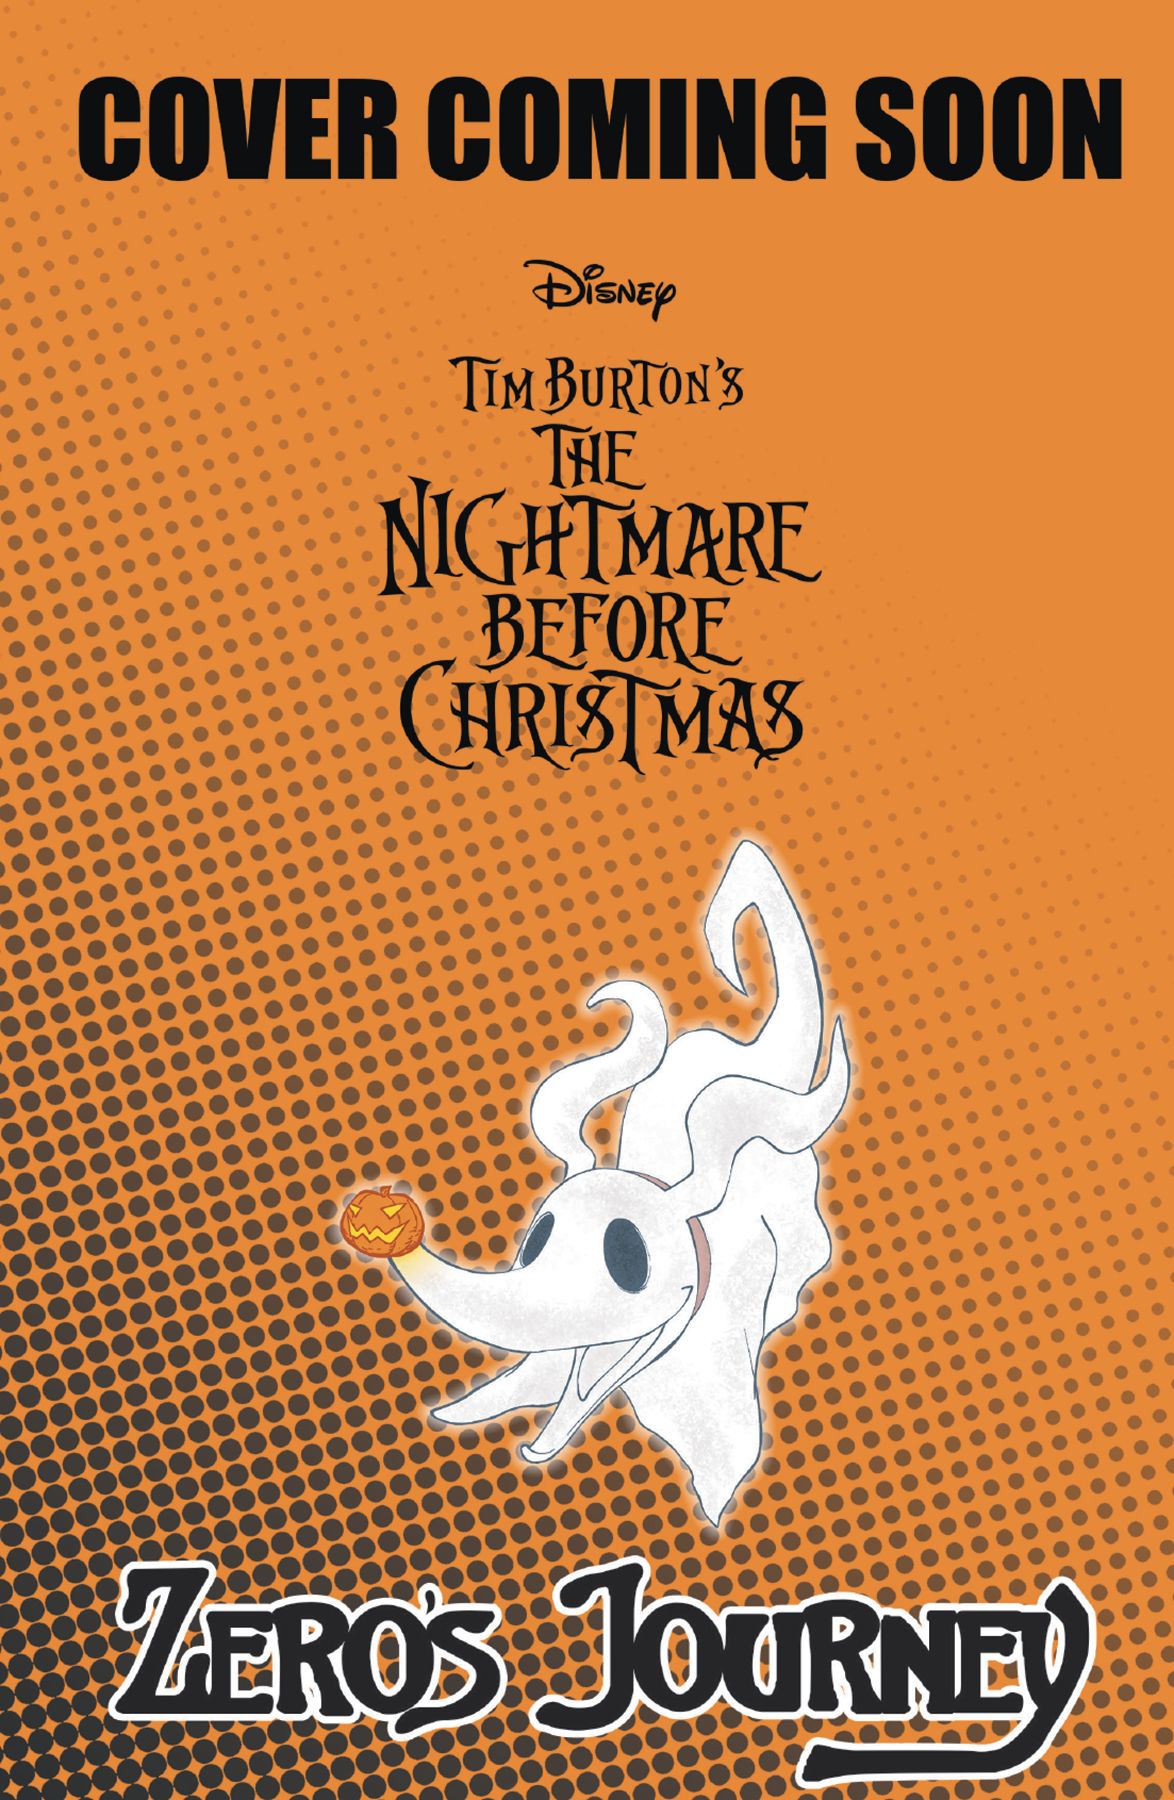 Tim Burton's Nightmare Before Christmas: Zero's Journey #9 Comic